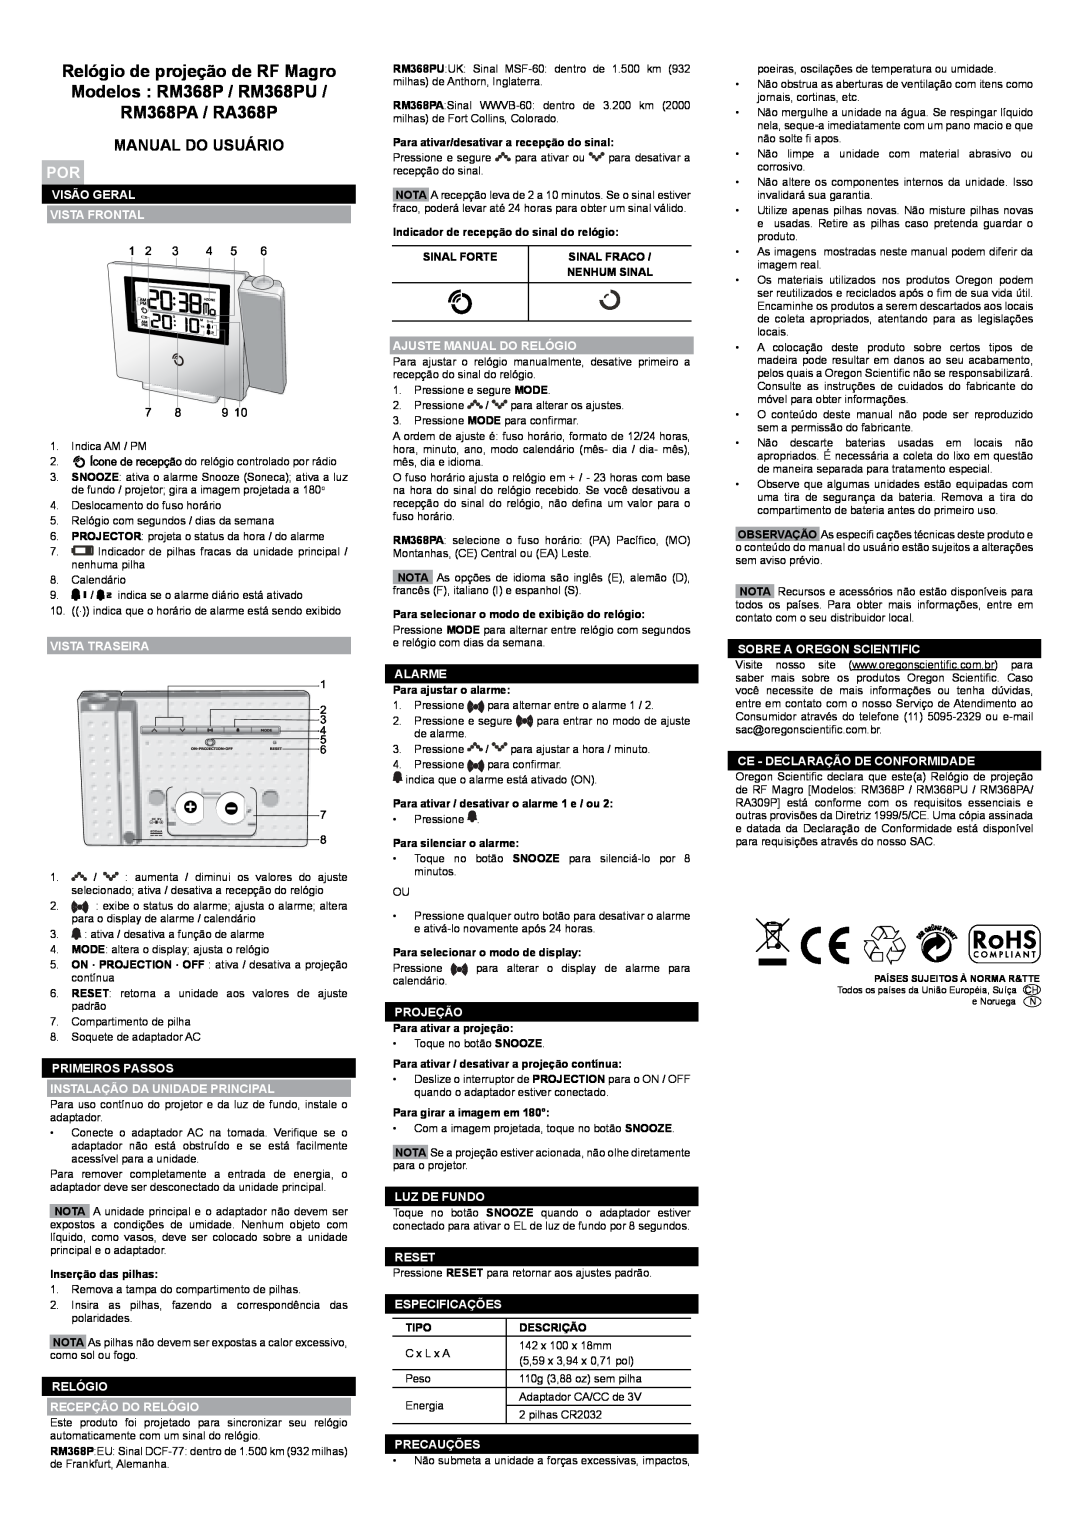 Oregon RA368P, RM368PU, RM368PA user manual Manual Do Usuário 